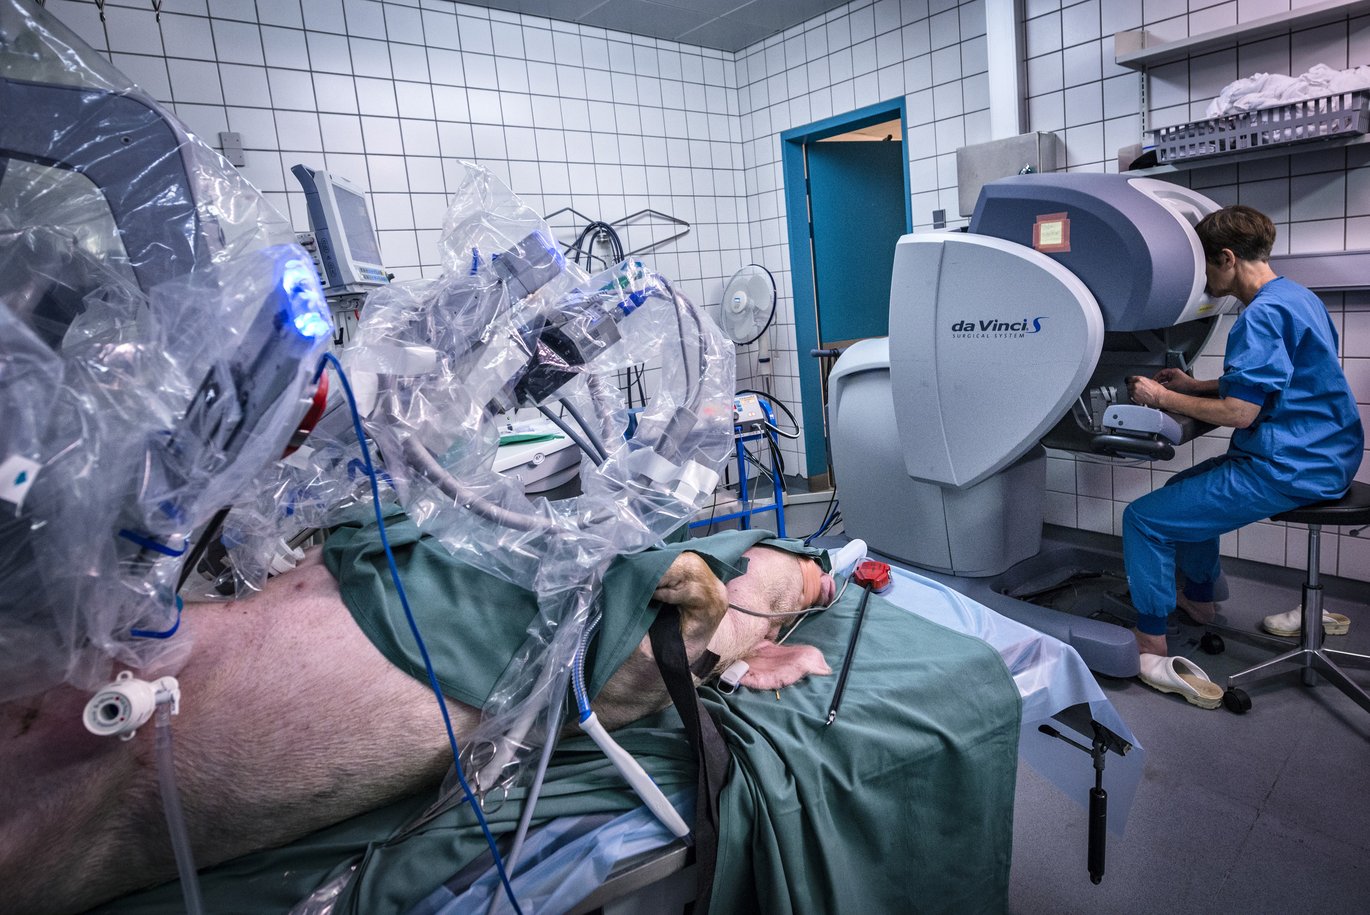 Institut for Klinisk Medicin etablerer Robotkirurgisk forsknings- og udviklingscenter. Foto: Tonny Foghmar, Aarhus Universitetshospital.